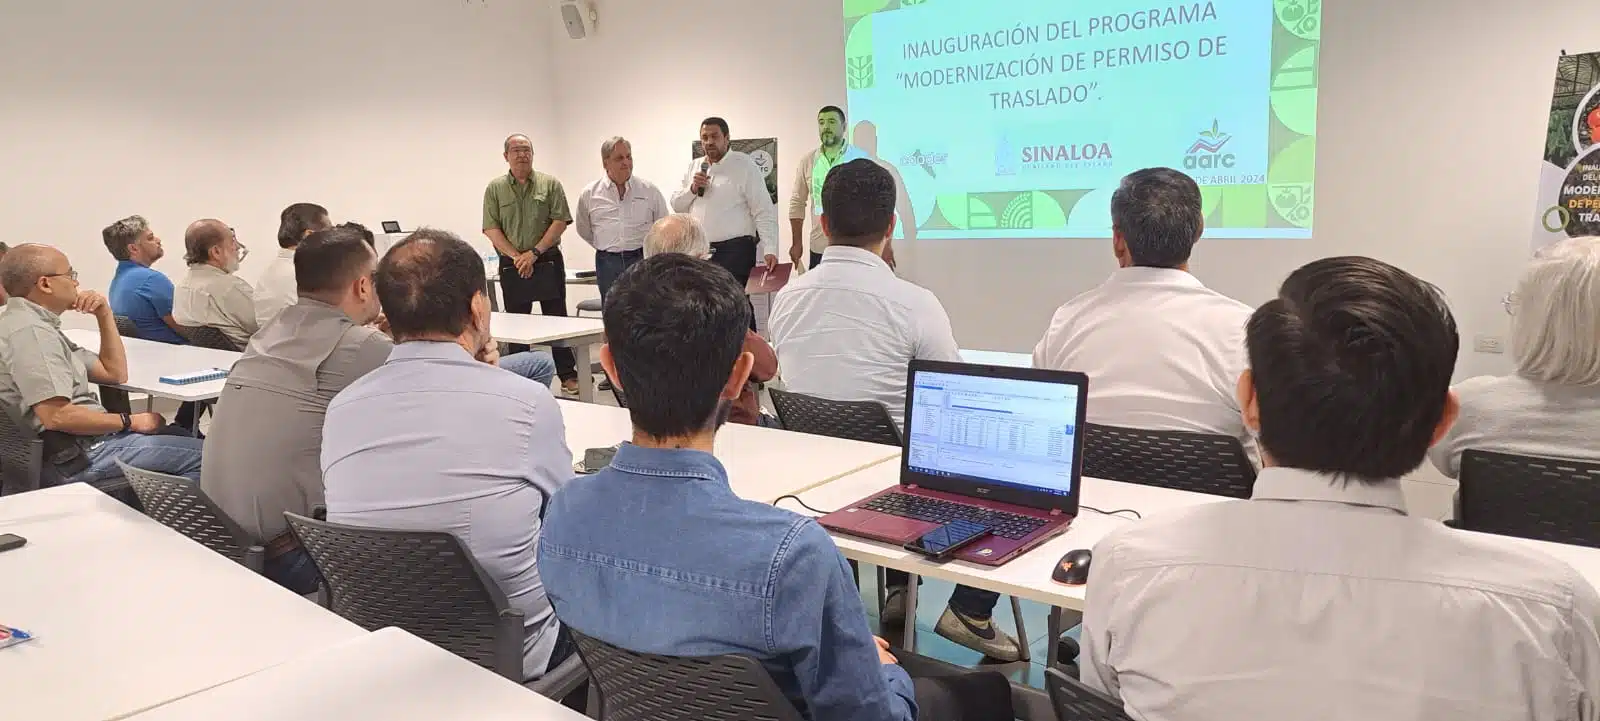 La Asociación de Agricultores del Río Culiacán (AARC) llevó a cabo el taller “Programa de Modernización de Permisos de Traslados”